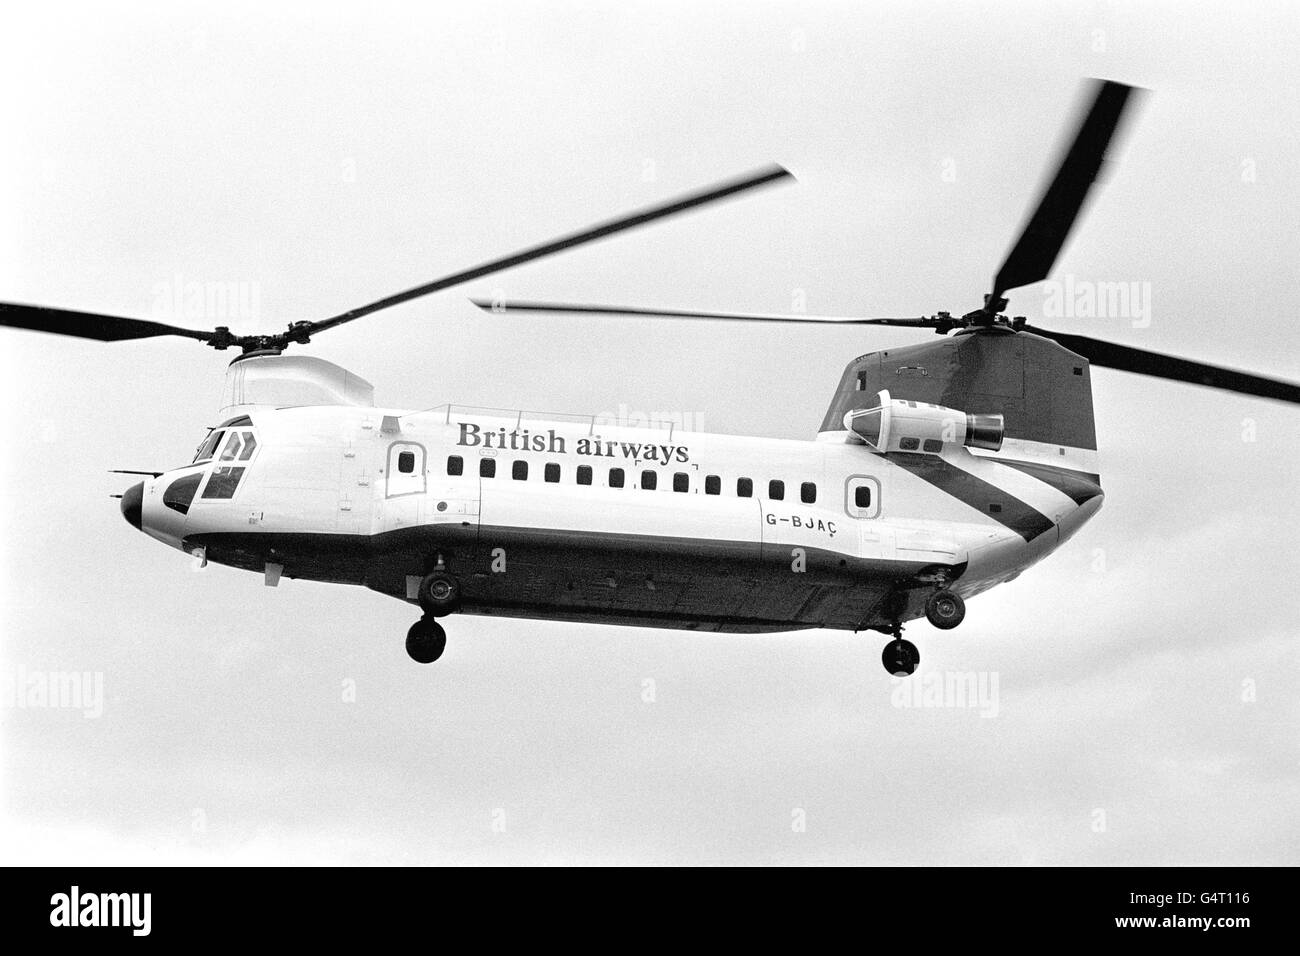 1/81 PUB BOEING VERTOL HELICOPTER BOEING 234 BRITISH AIRWAYS G-BJAC ORIGINAL AD 